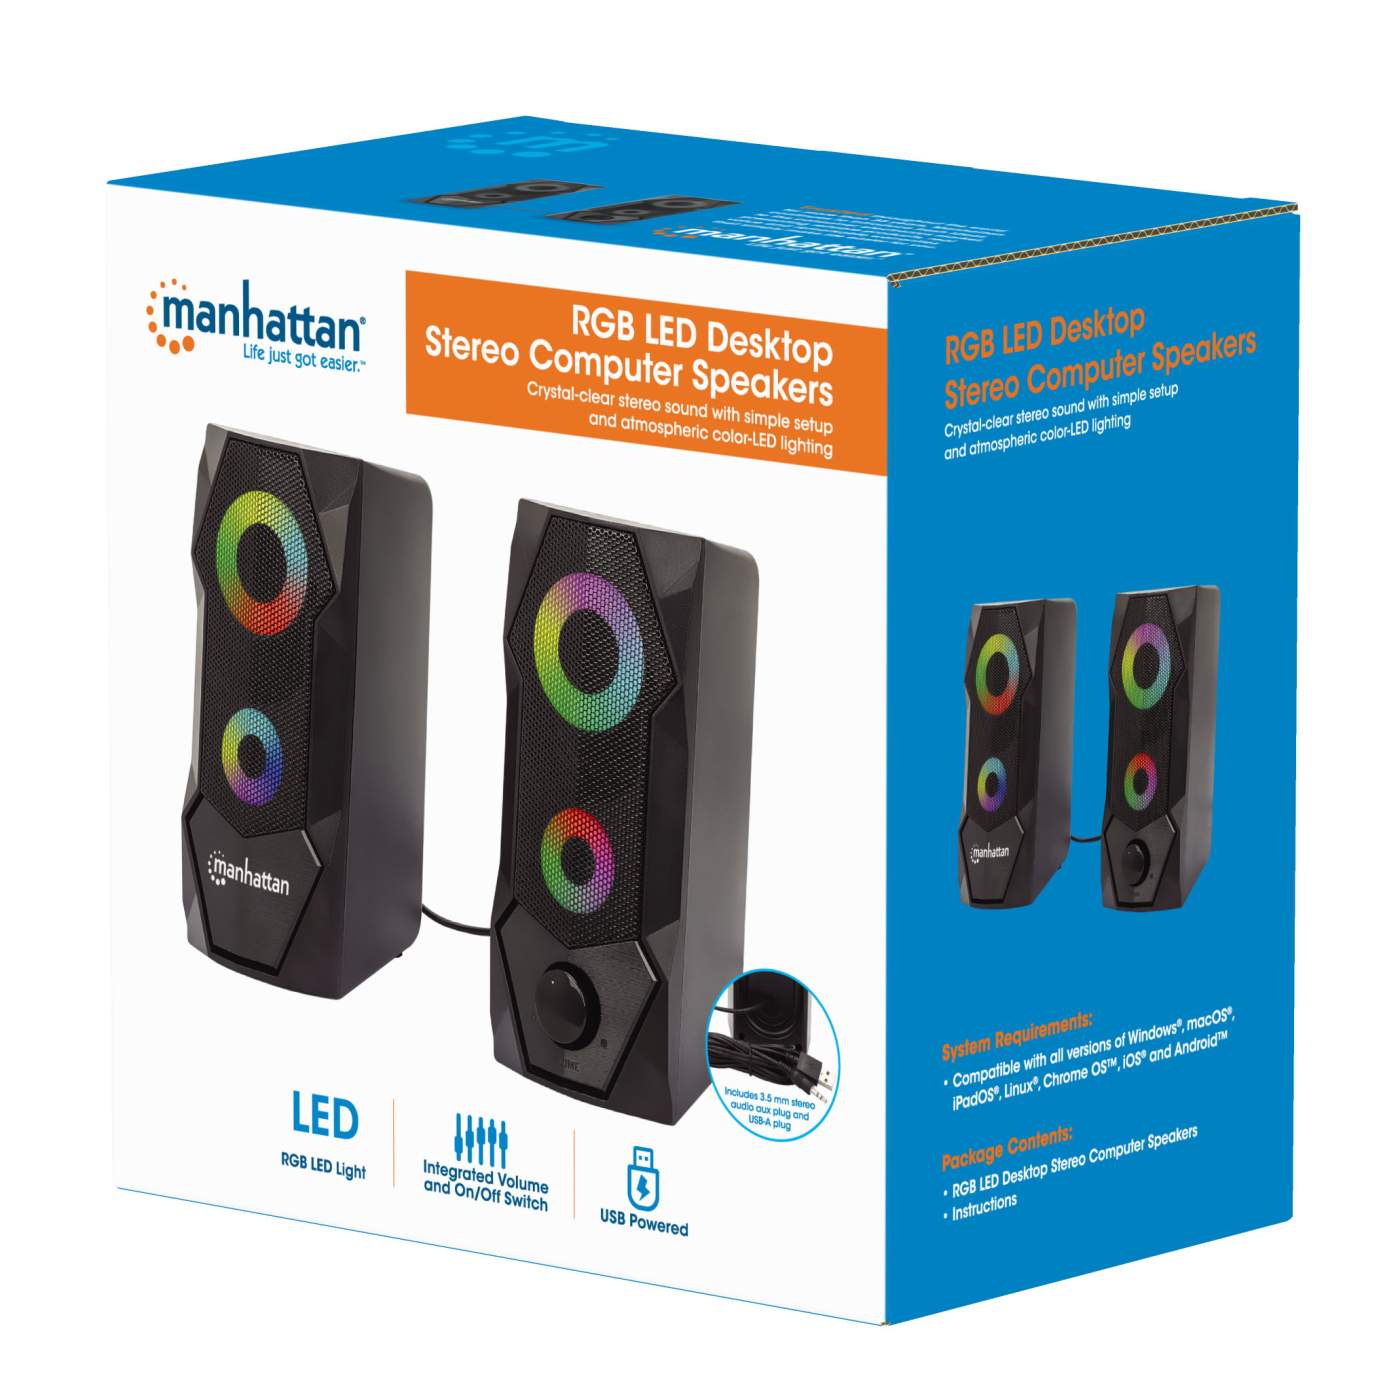 RGB LED Desktop Stereo Computer Speakers Packaging Image 2